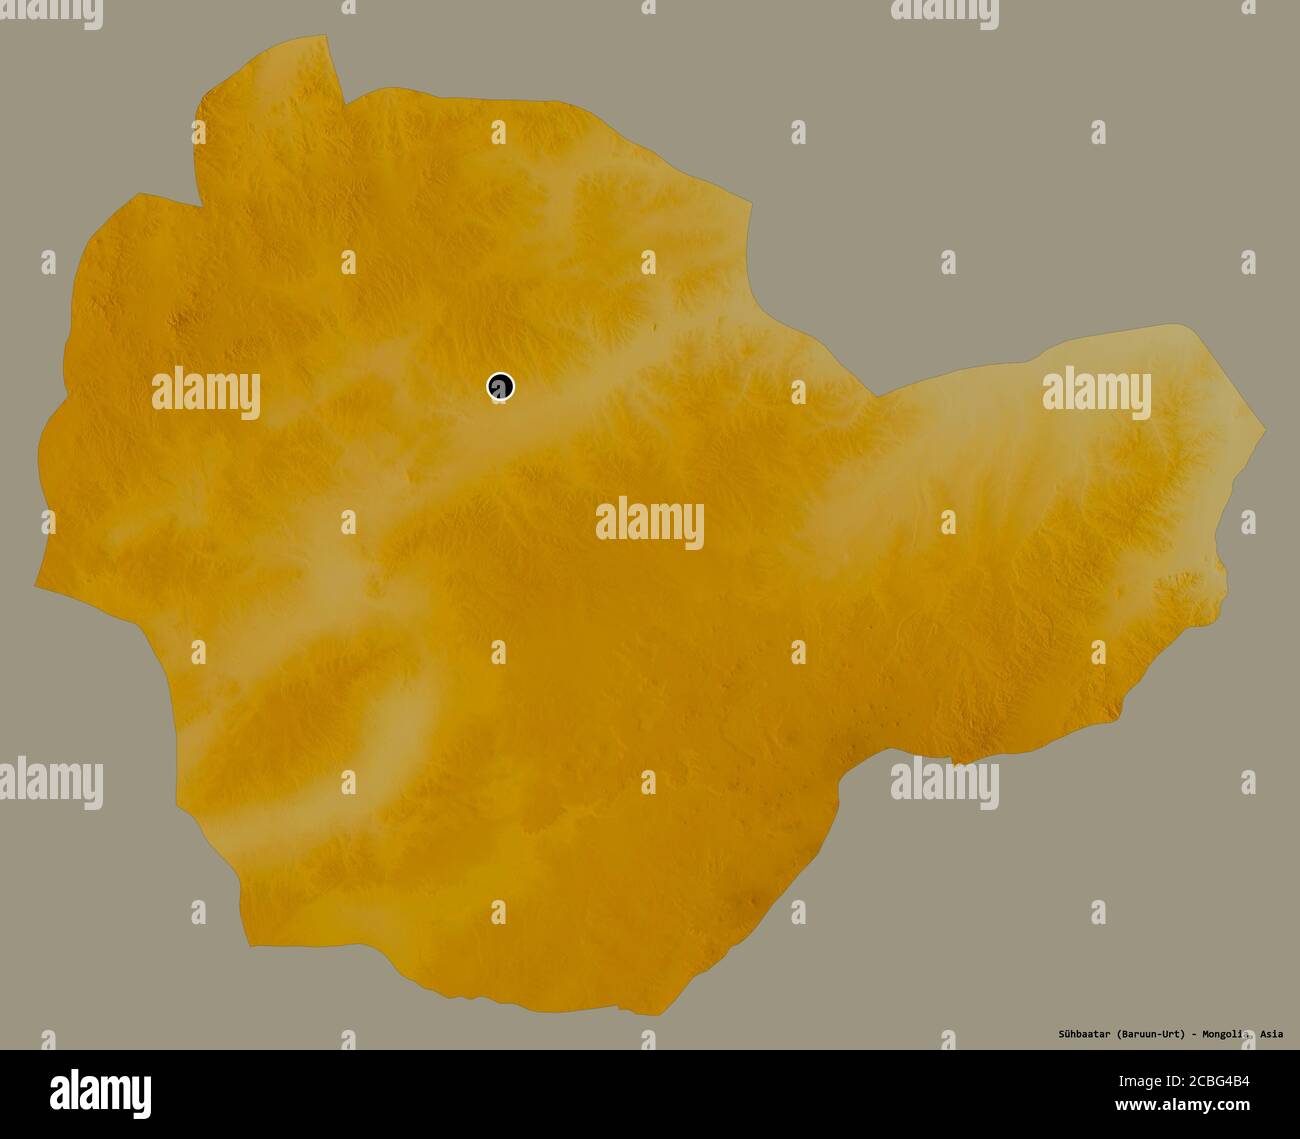 Forme de Sühbaatar, province de Mongolie, avec sa capitale isolée sur un fond de couleur unie. Carte topographique de relief. Rendu 3D Banque D'Images